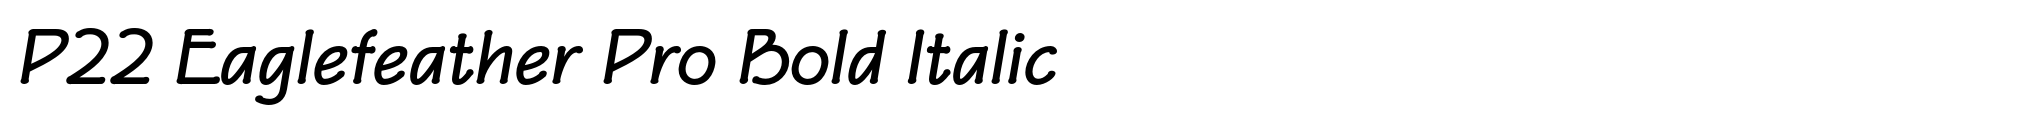 P22 Eaglefeather Pro Bold Italic image